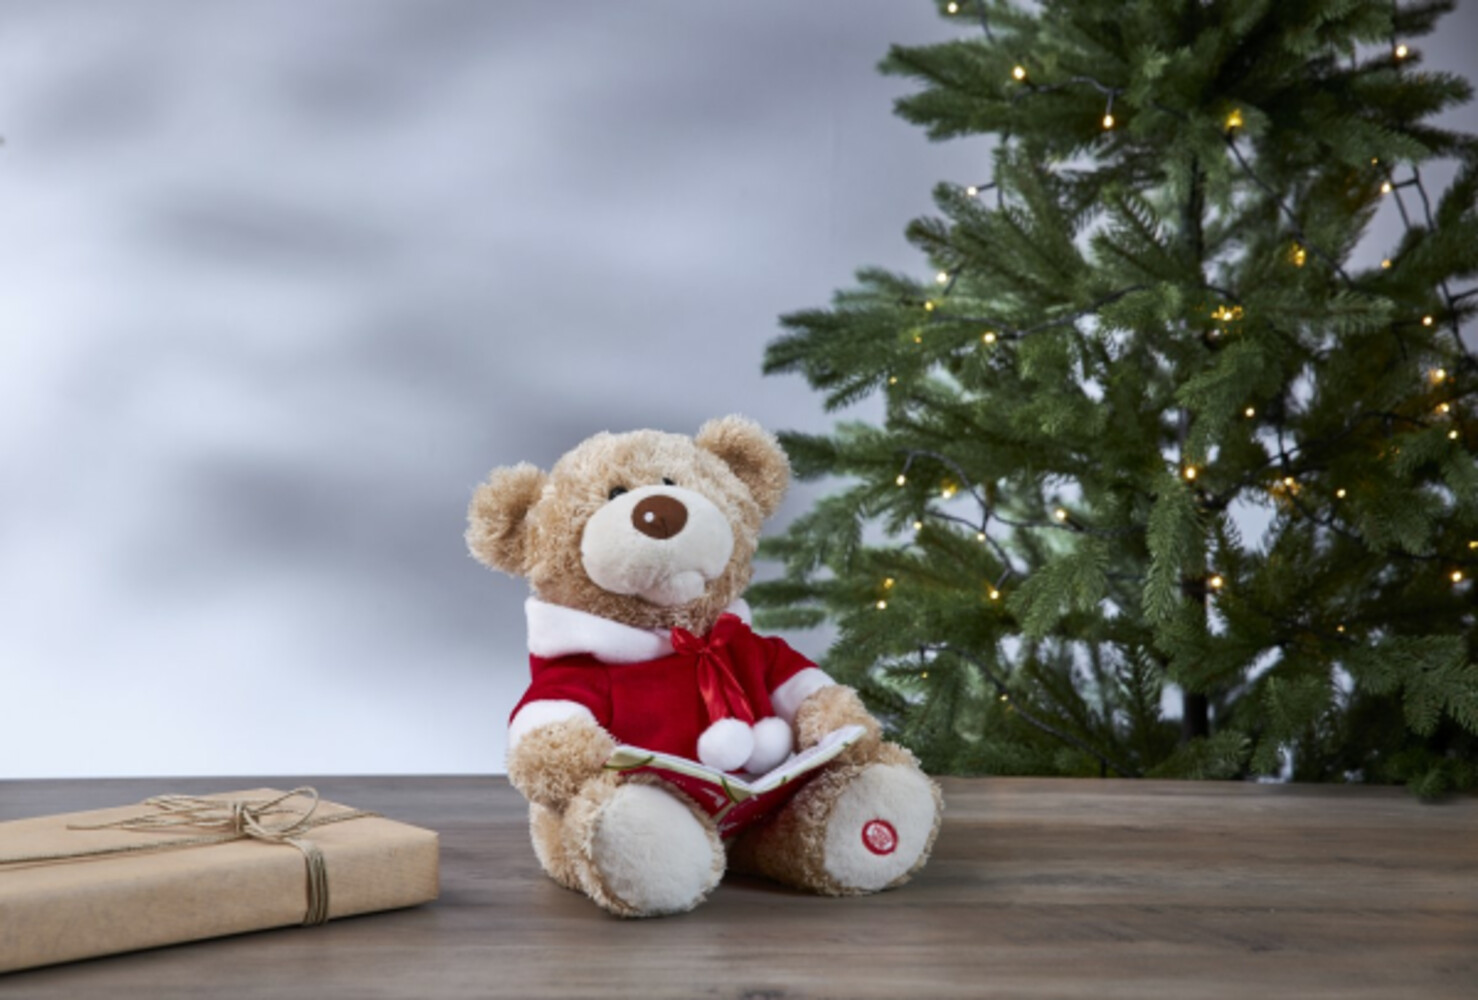 Bezaubernder Teddybär in Beige und Rot, der gemütlich ein Buch vorliest, von der Marke Star Trading